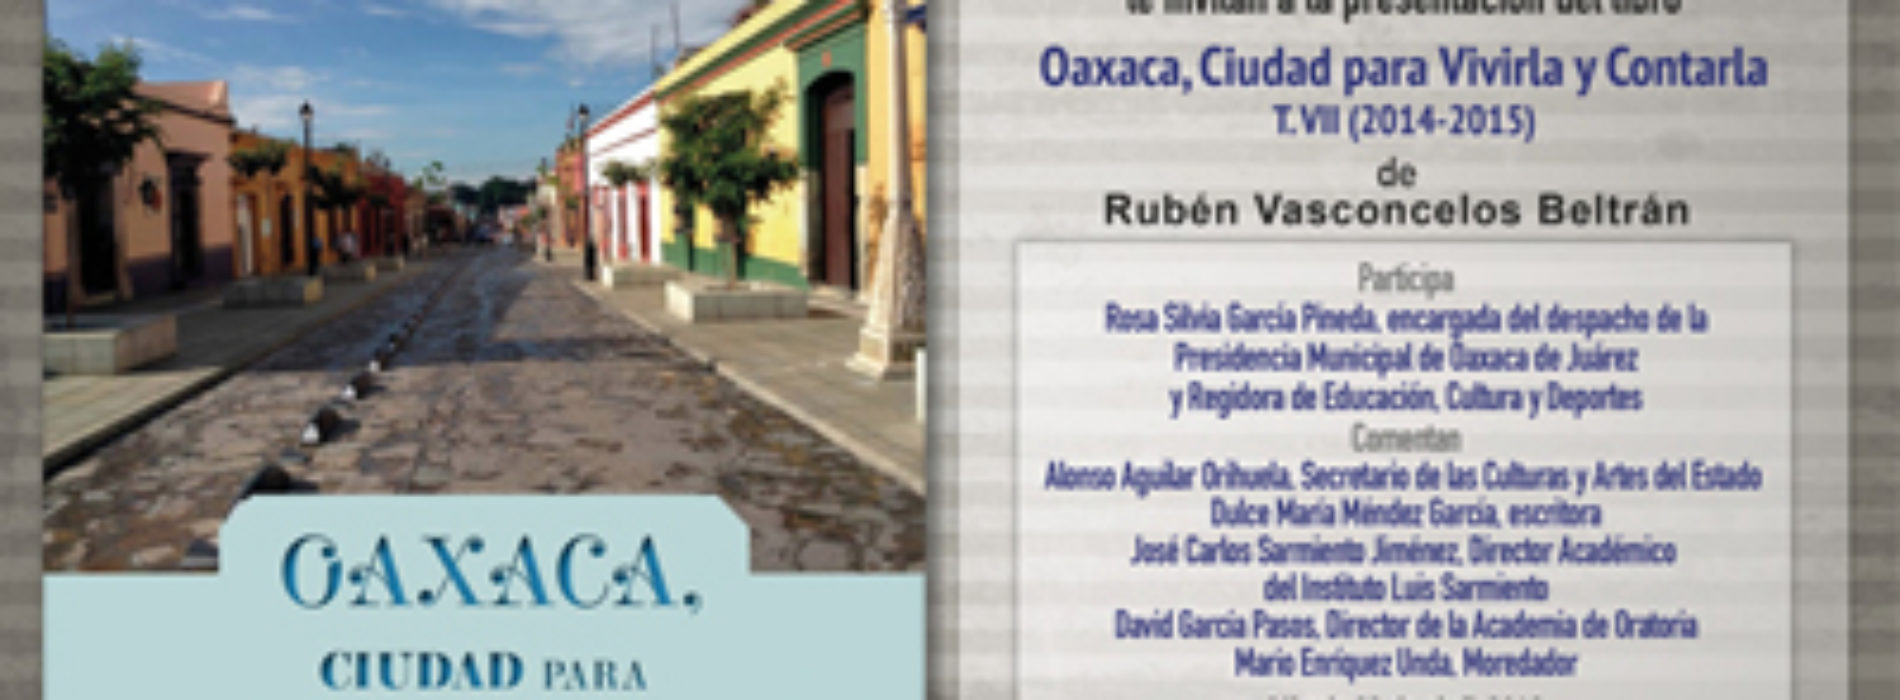 Presentarán libro “Oaxaca, ciudad para vivirla y contarla”